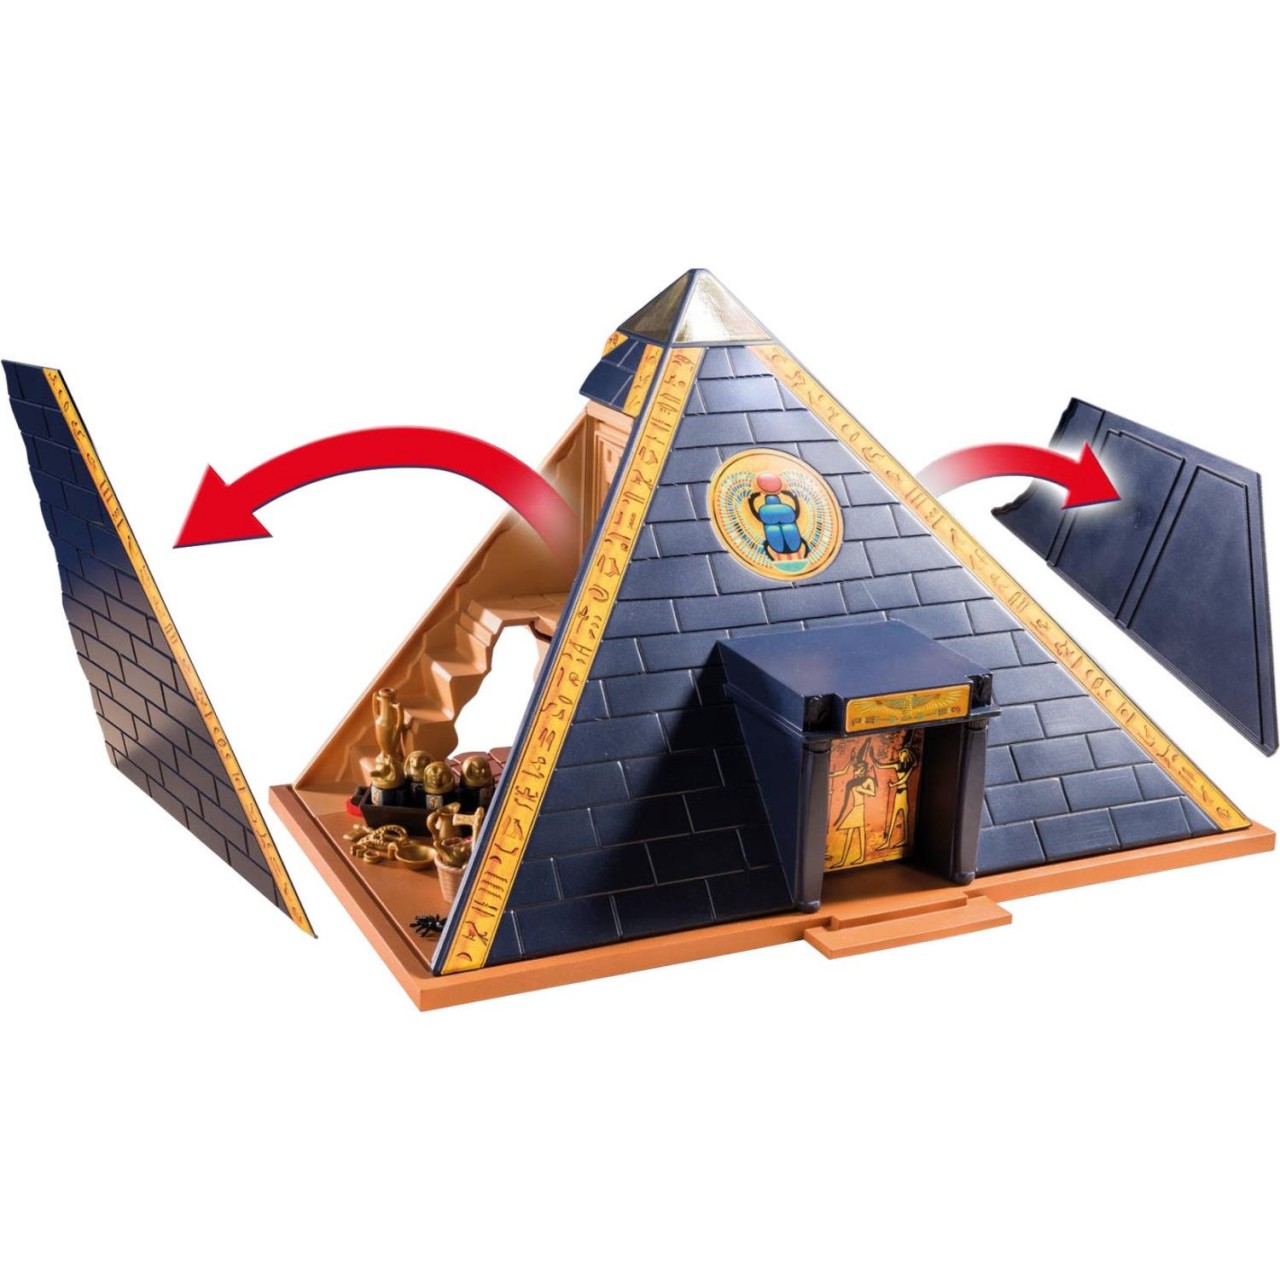 Playmobil 5386 Pyramide des Pharao